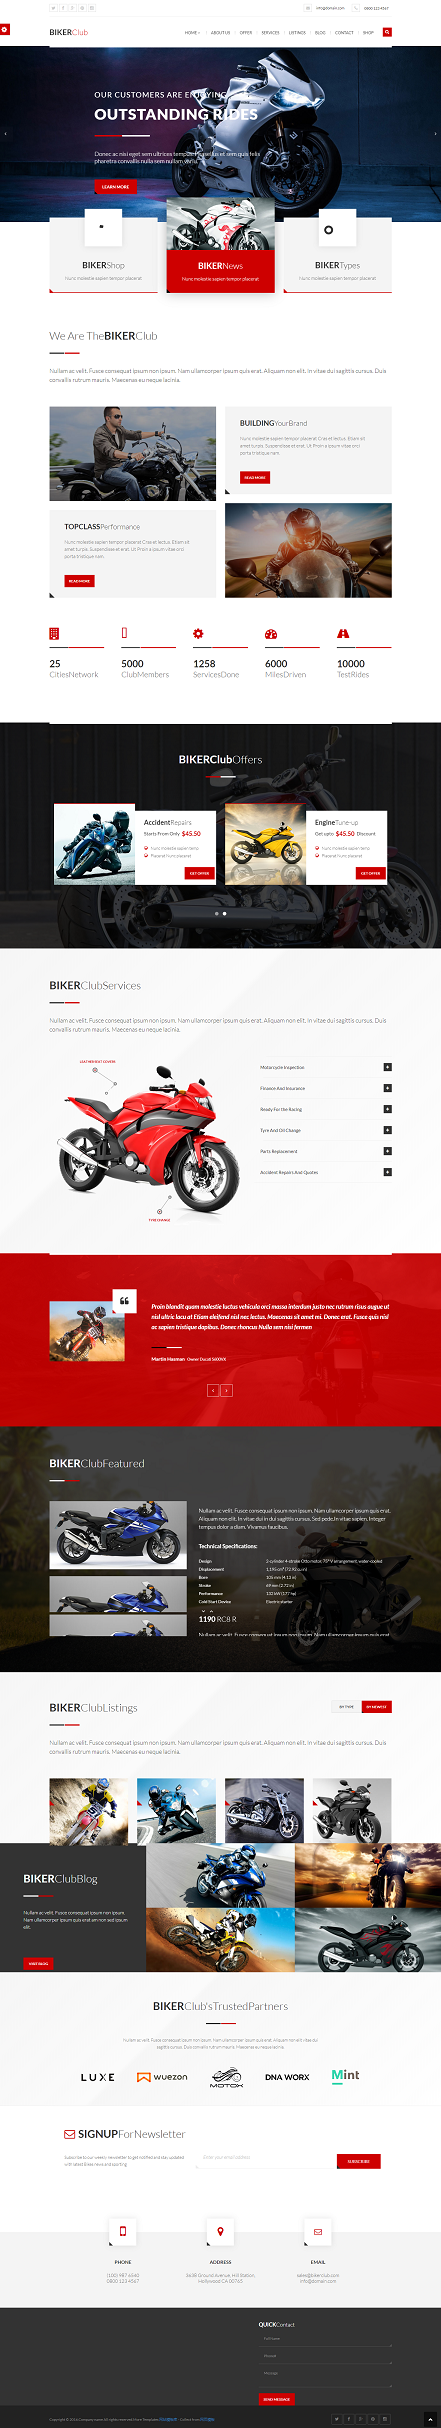 大气酷炫改装摩托车类网站模板